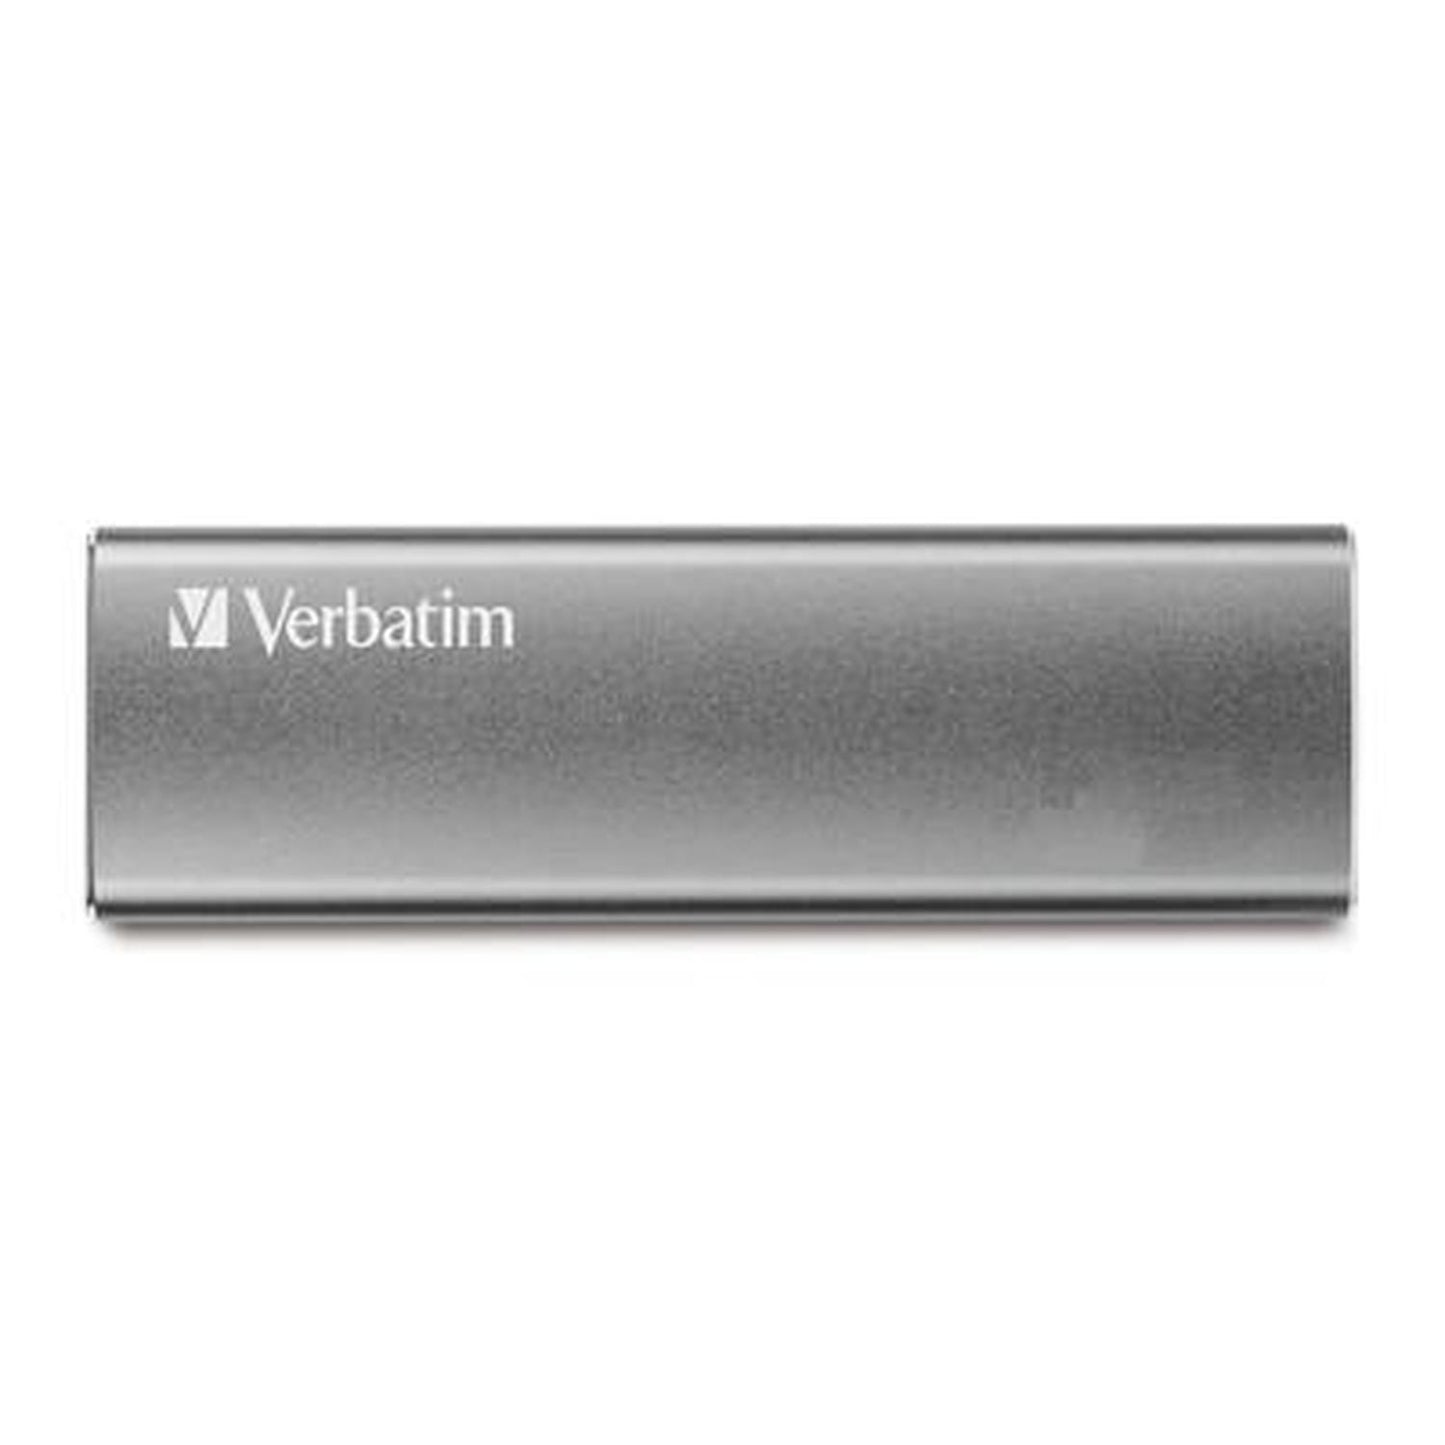 SSD externo Verbatim Vx500 de 480GB,USB3.1 color Grafito